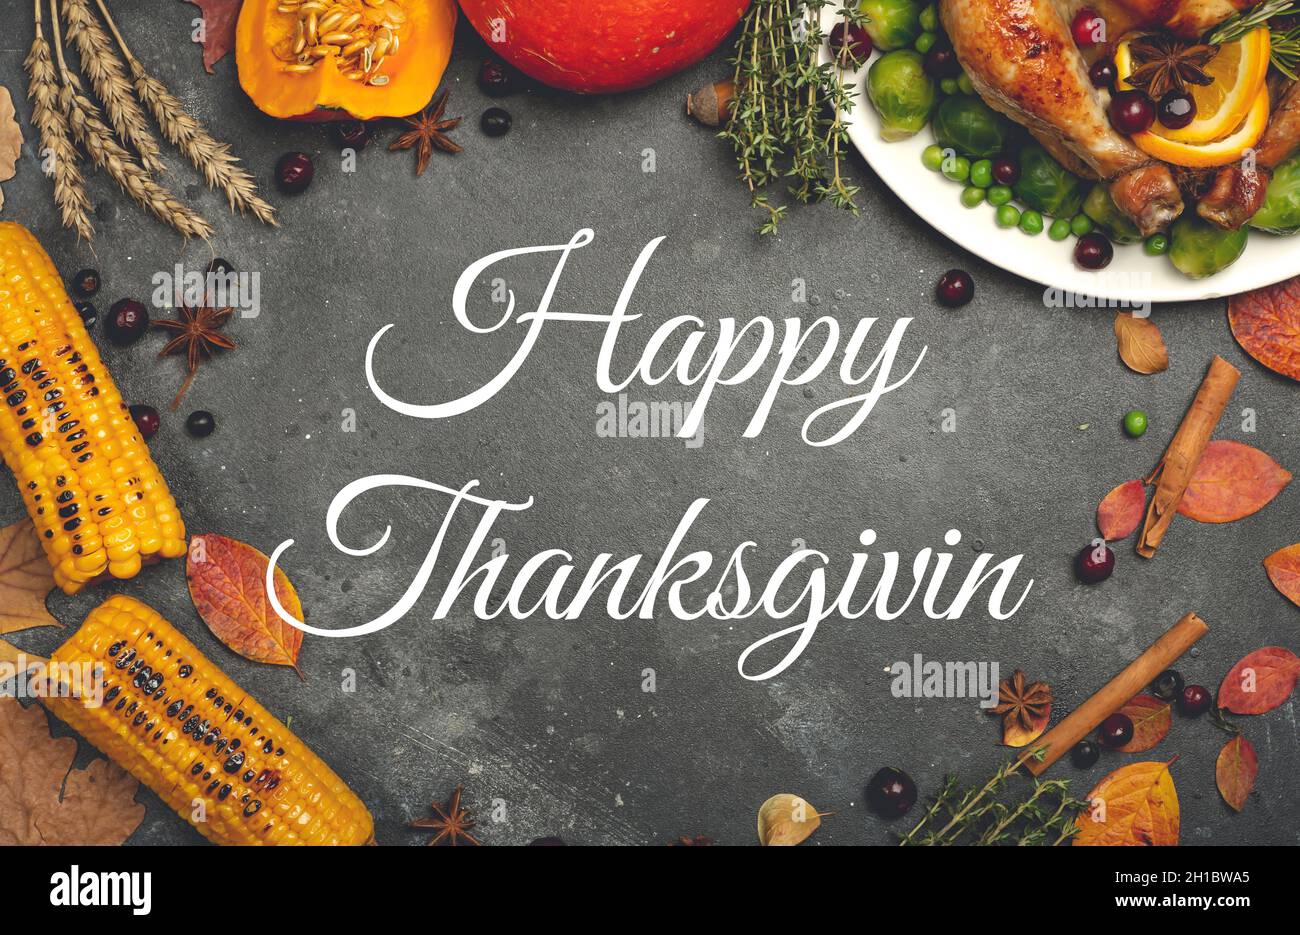 Happy Thanksgiving Schriftzug auf festlichem Dinner-Hintergrund. Speisen im Hintergrund mit saisonalen Herbstspezialitäten zum Thanksgiving Day. Gebratenes Huhn mit Kürbis, Gemüse und Herbstdekor. Hochwertige Fotos Stockfoto